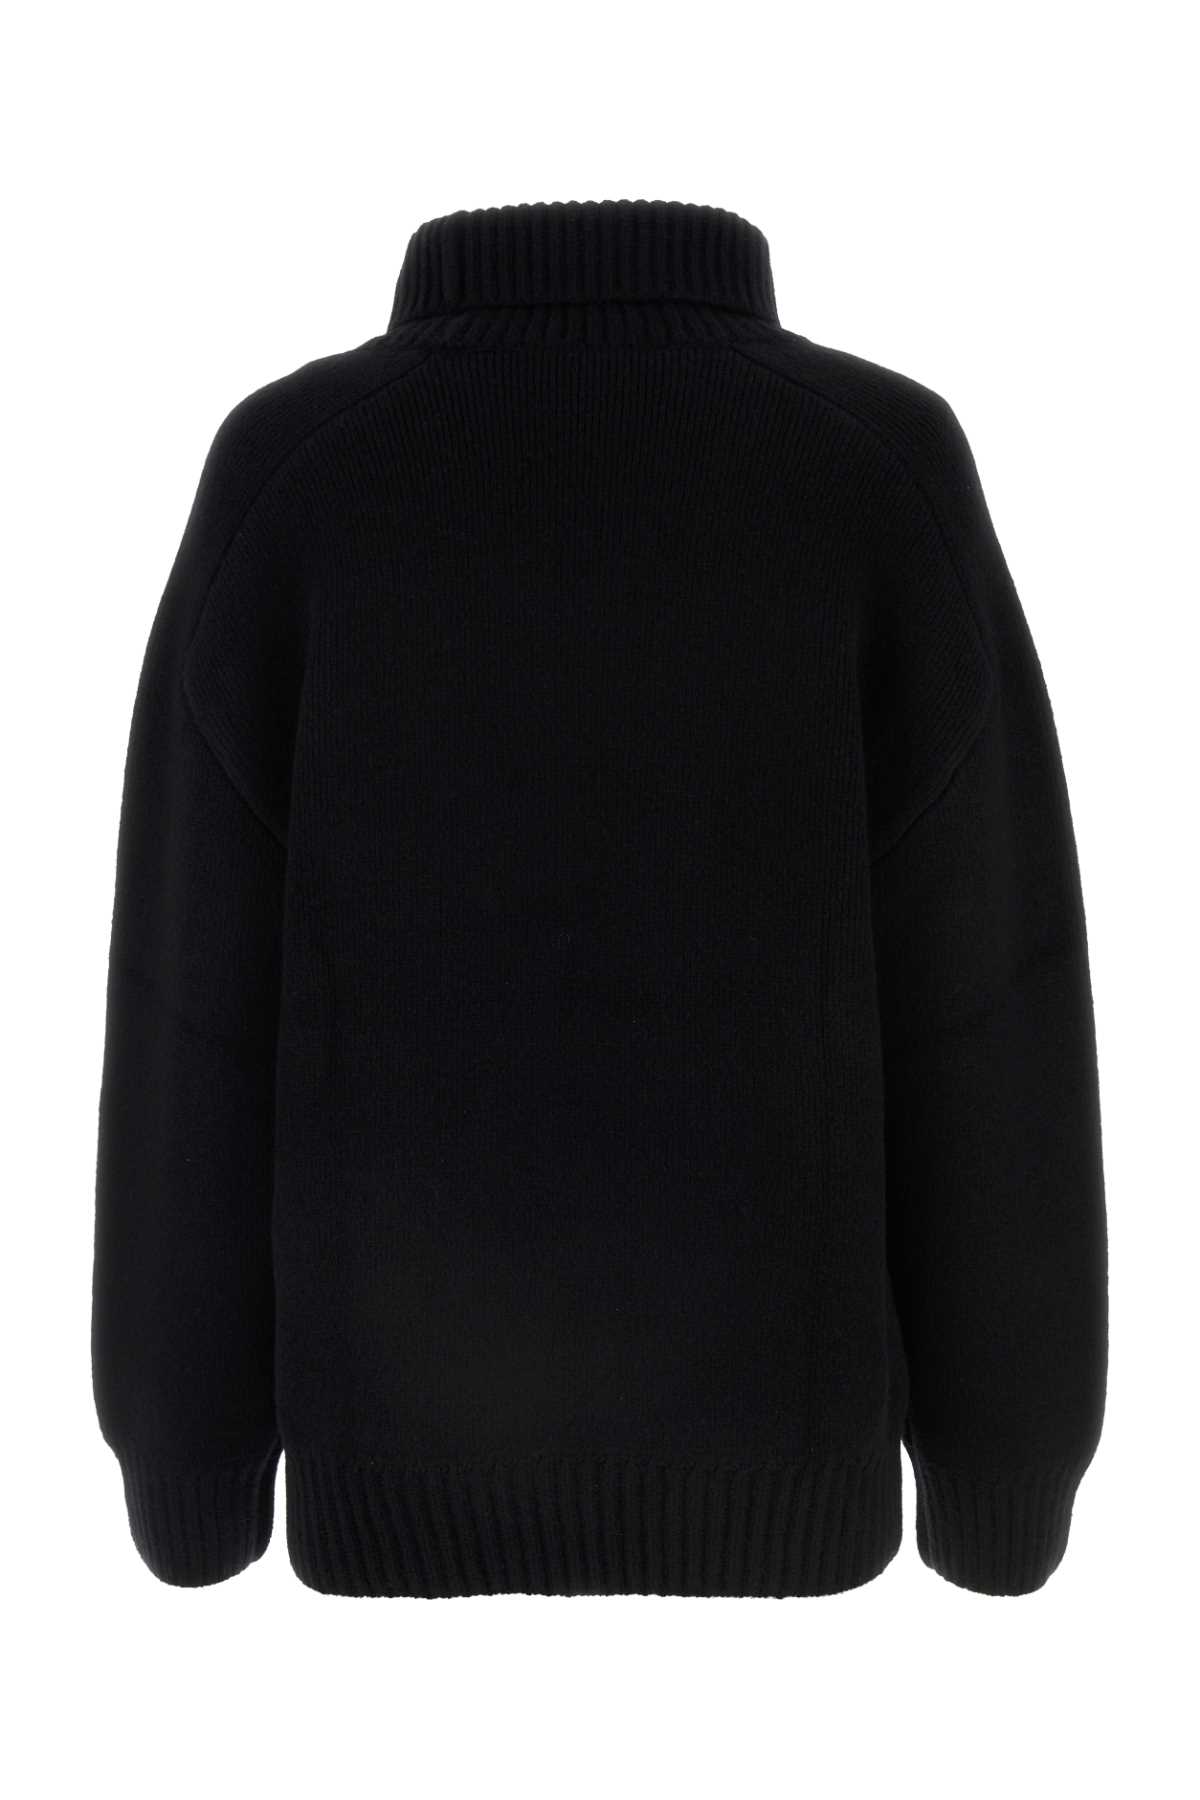 Shop Khaite Black Stretch Cashmere Landen Sweater